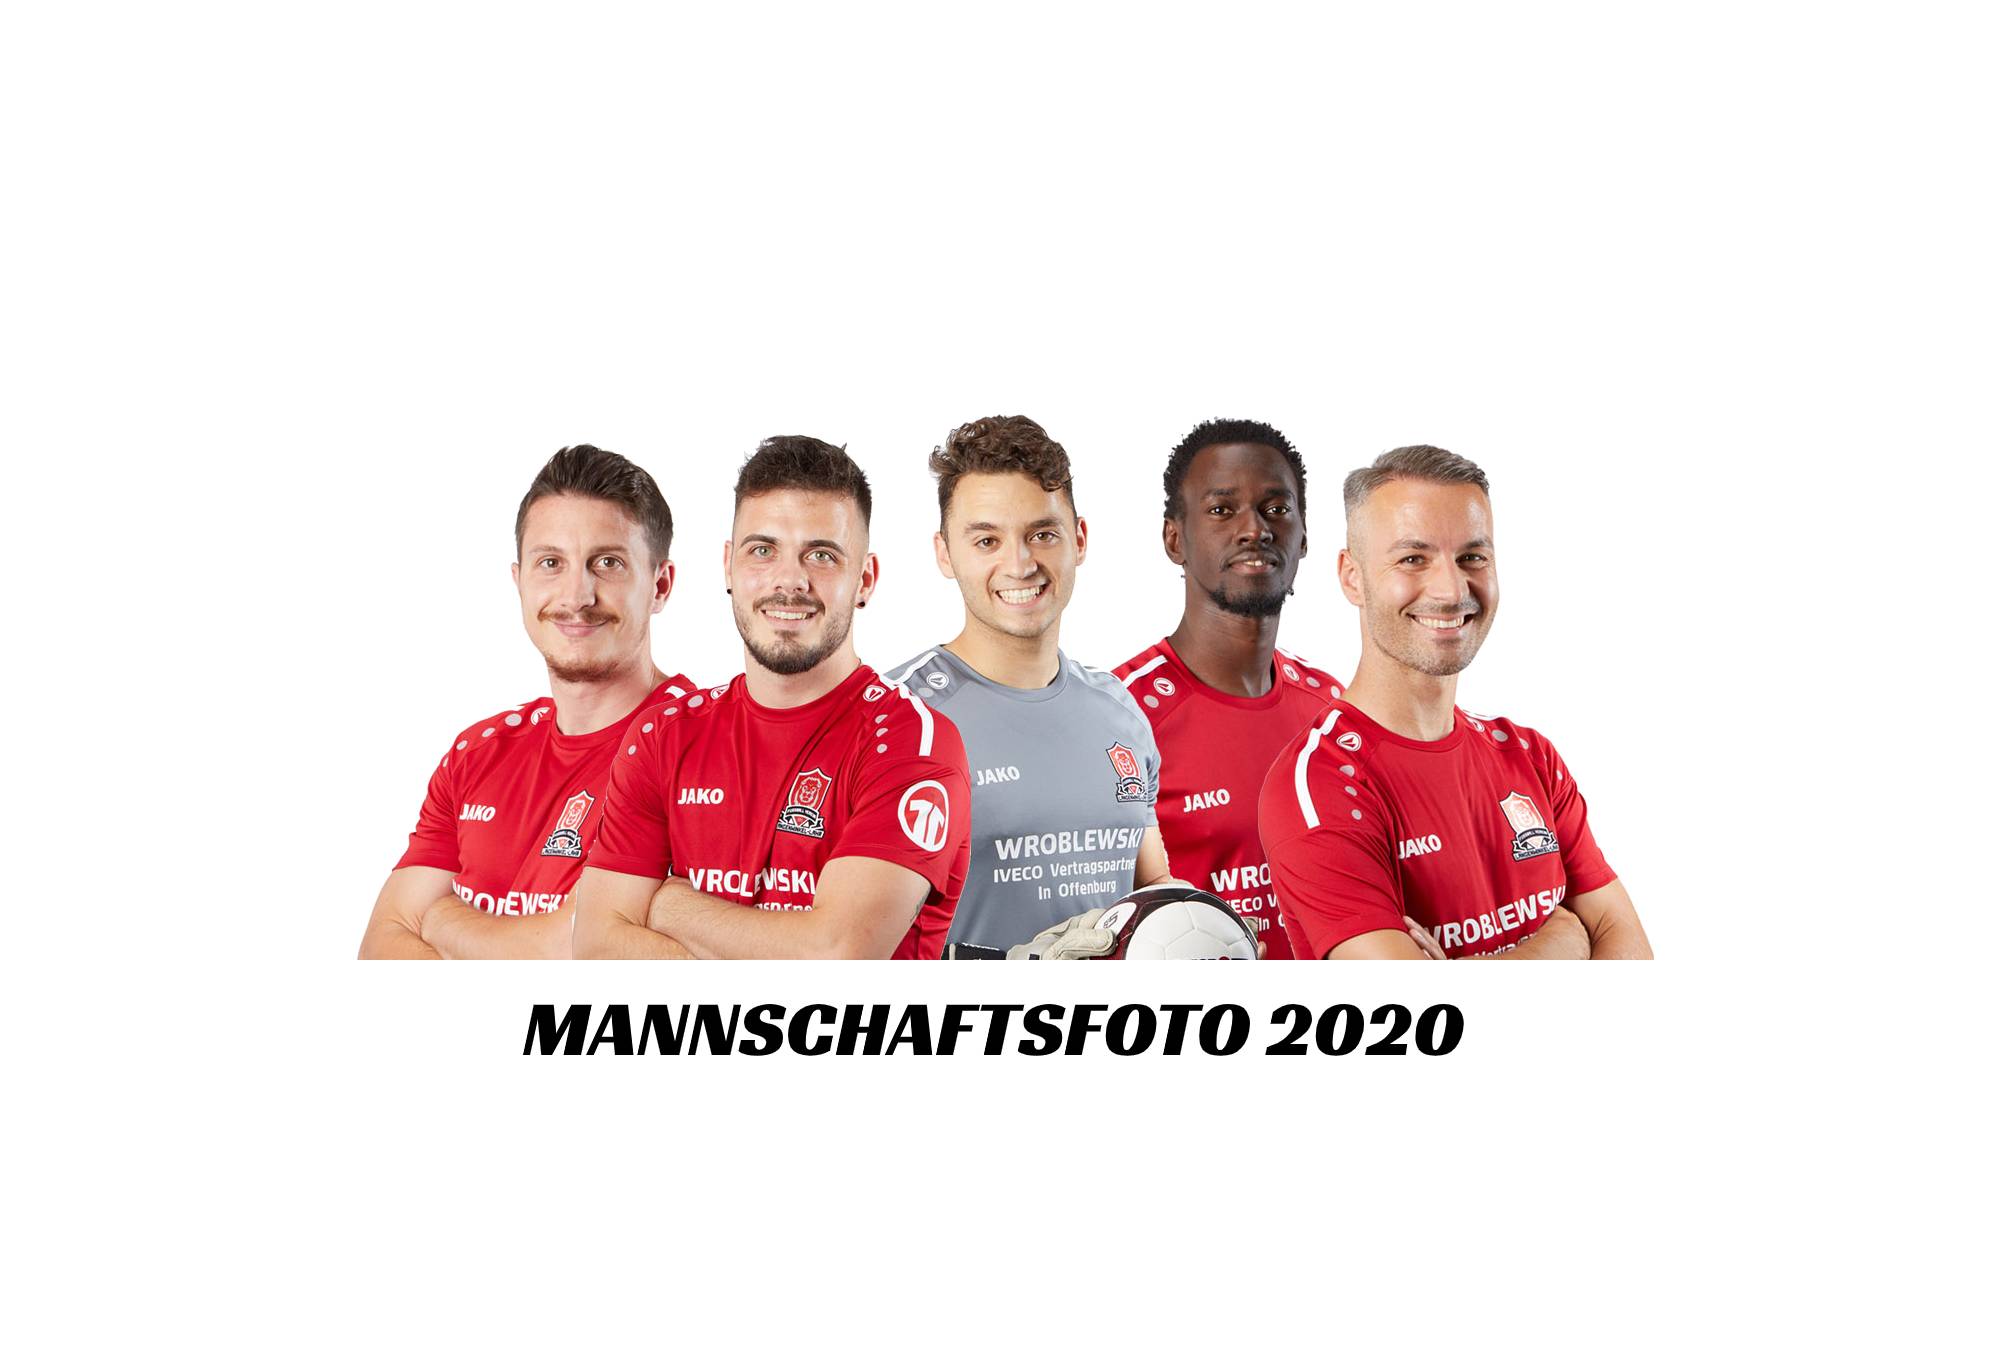 Mannschaftsfoto 2020